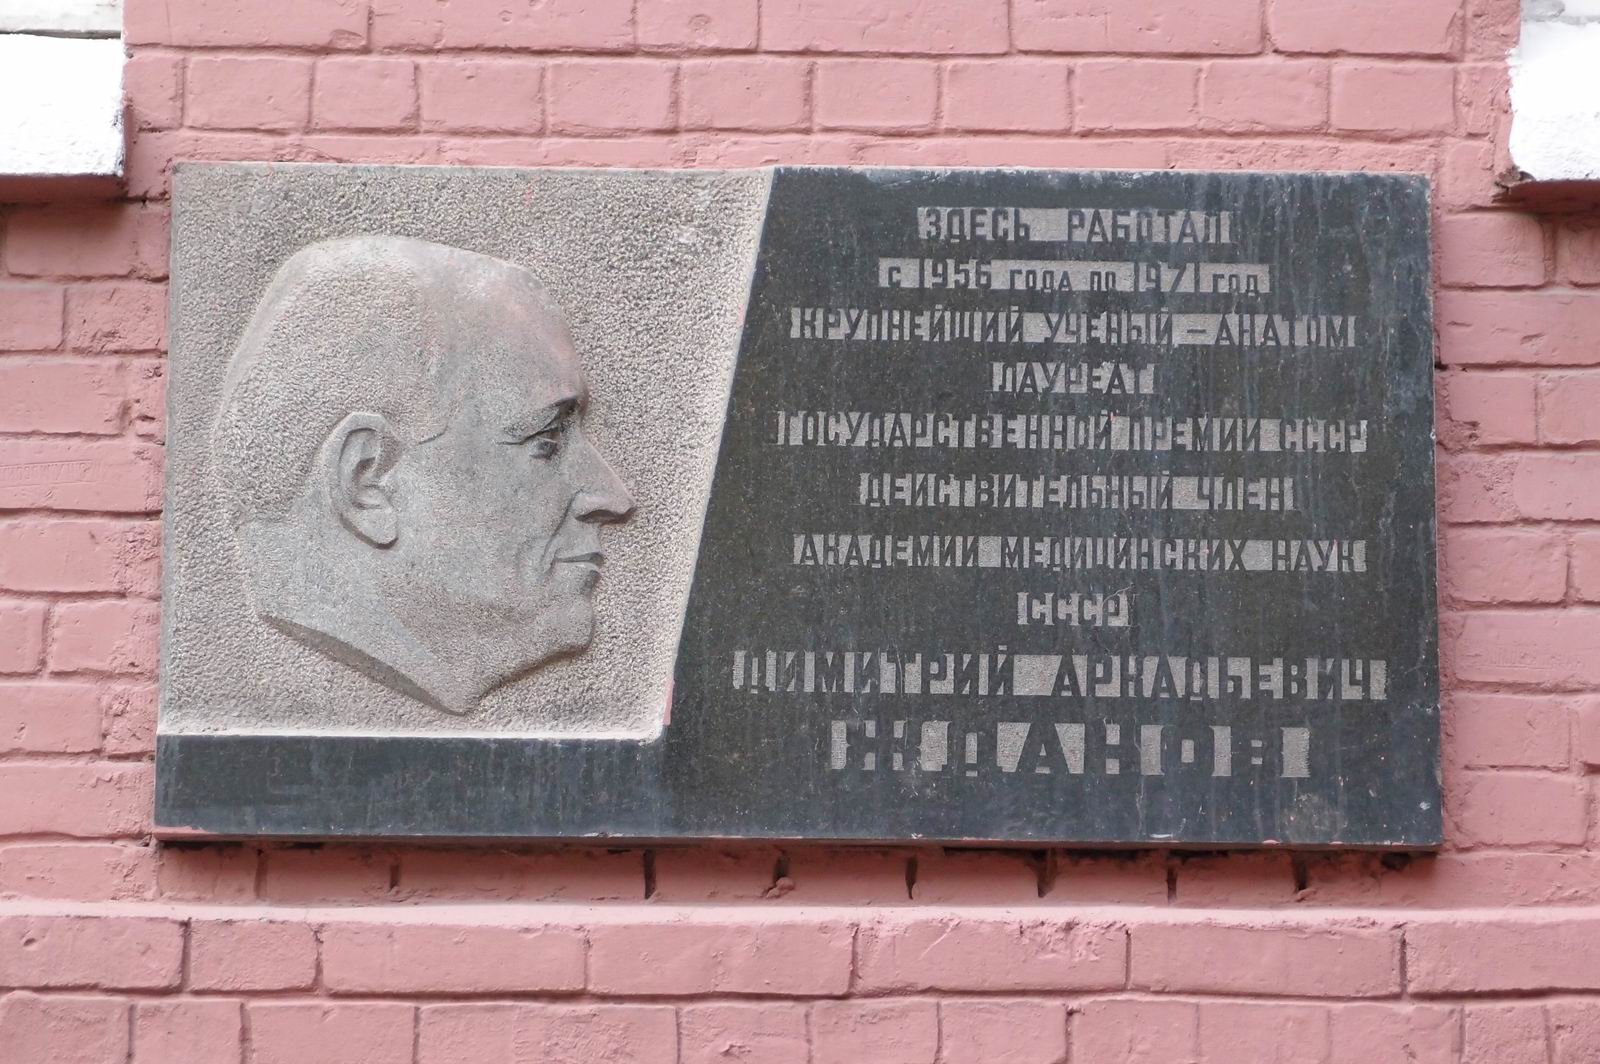 Мемориальная доска Жданову Д.А. (1908–1971), ск. В.И.Федорин, на Моховой улице, дом 11, строение 10, открыта 15.9.1973.